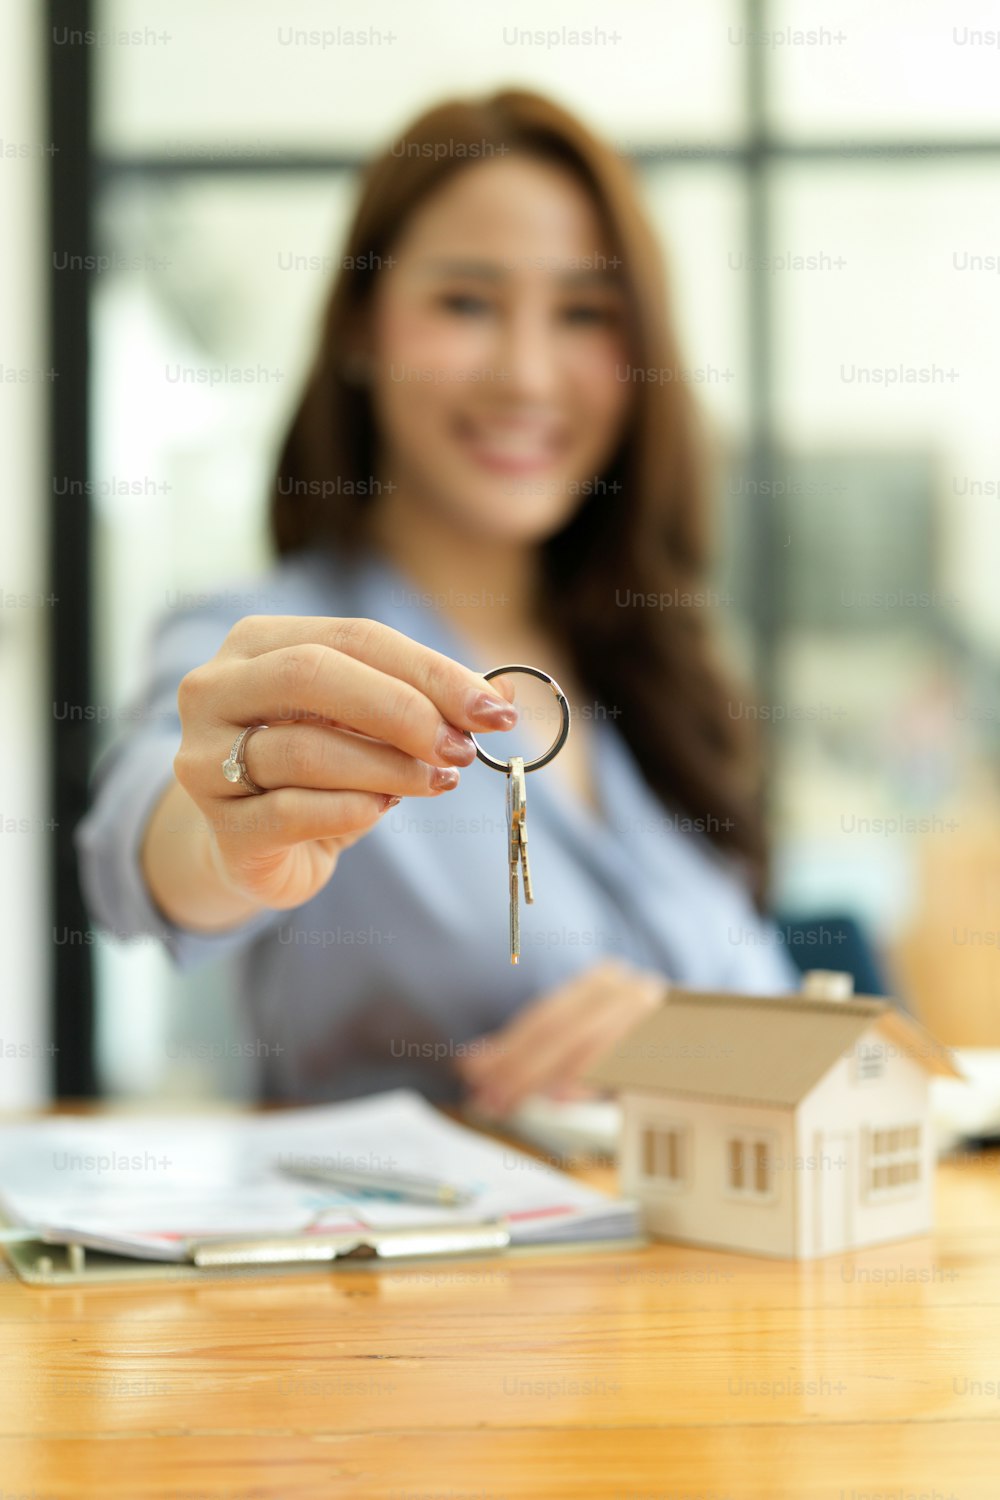 Manos enfocadas, hermoso agente inmobiliario que sostiene la llave de la casa, el modelo de la casa y el contrato de alquiler sobre la mesa